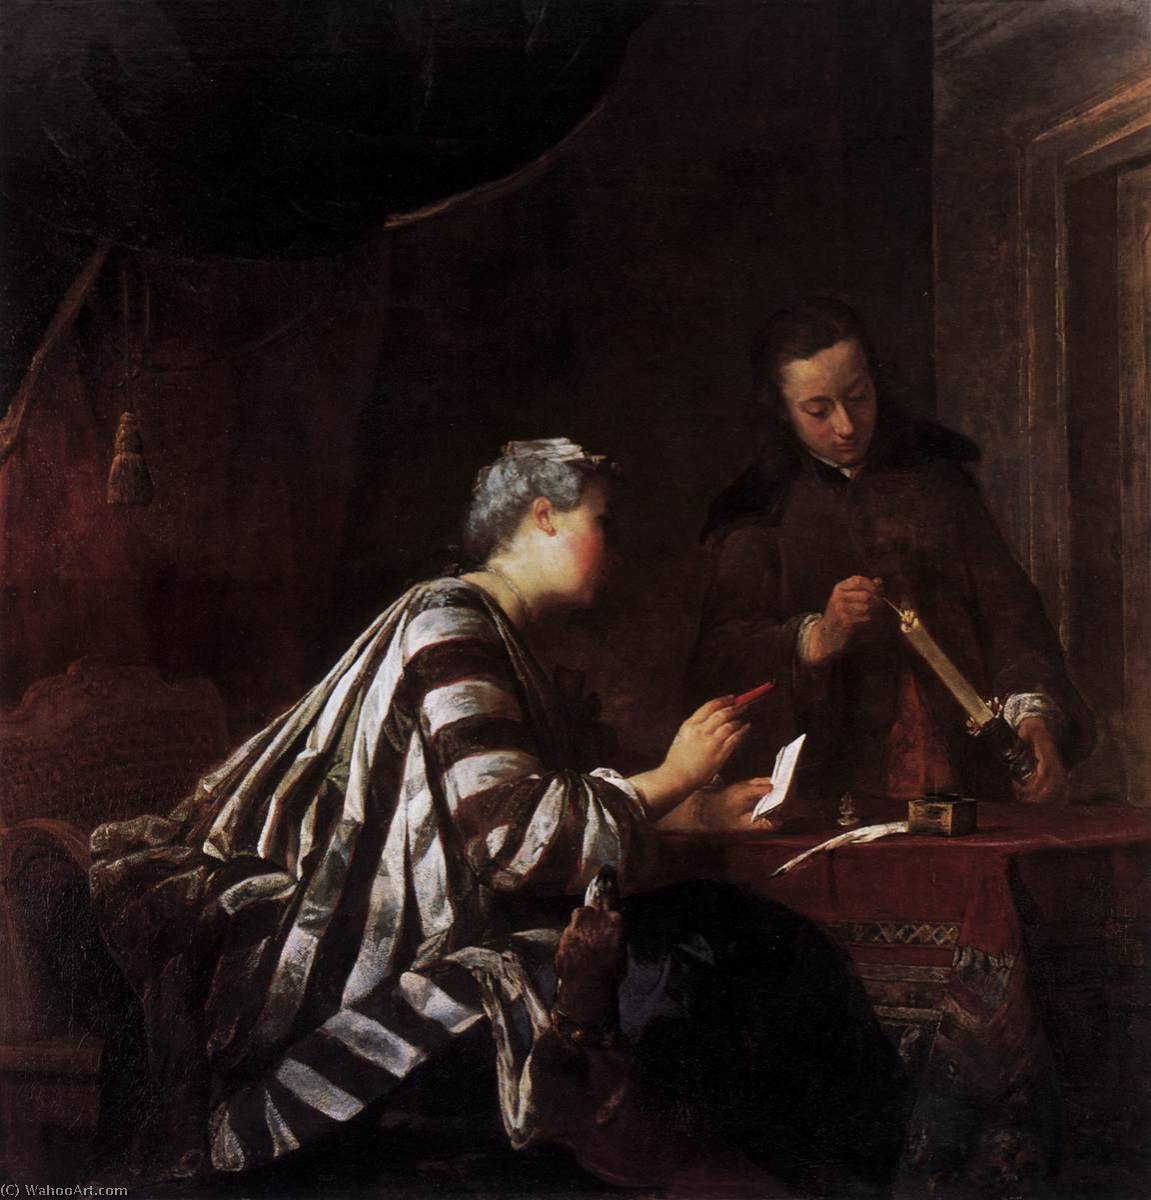 WikiOO.org - Encyclopedia of Fine Arts - Lukisan, Artwork Jean-Baptiste Simeon Chardin - Sealing the Letter